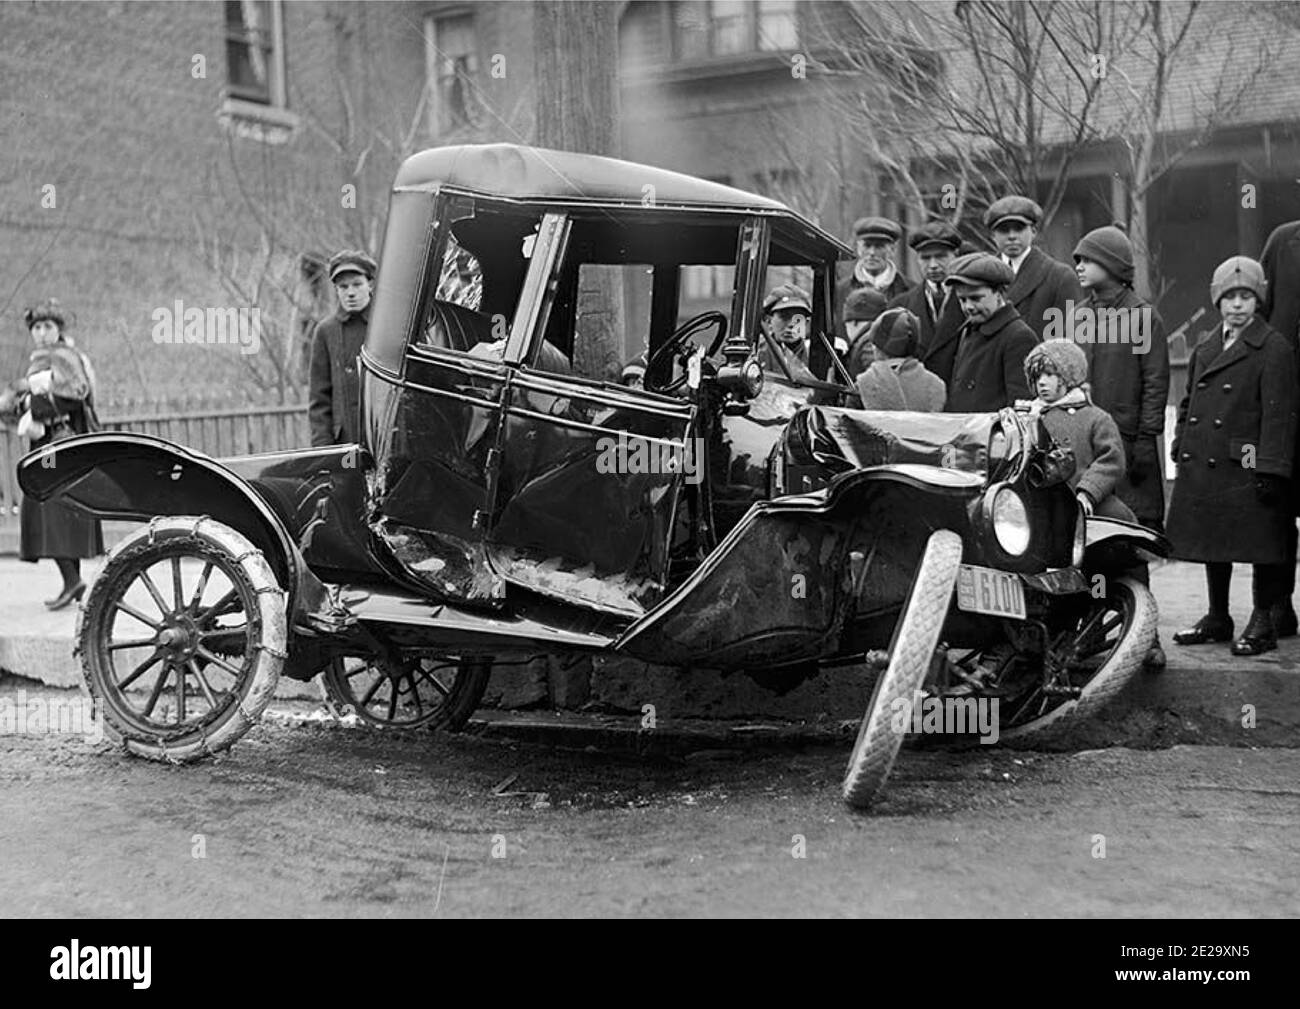 Vintage Schwarz-Weiß-Fotografie eines frühen Autounfalls in Toronto mit einer kleinen Menge Zuschauer. Wahrscheinlich der erste Autounfall, den sie gesehen haben. Stockfoto